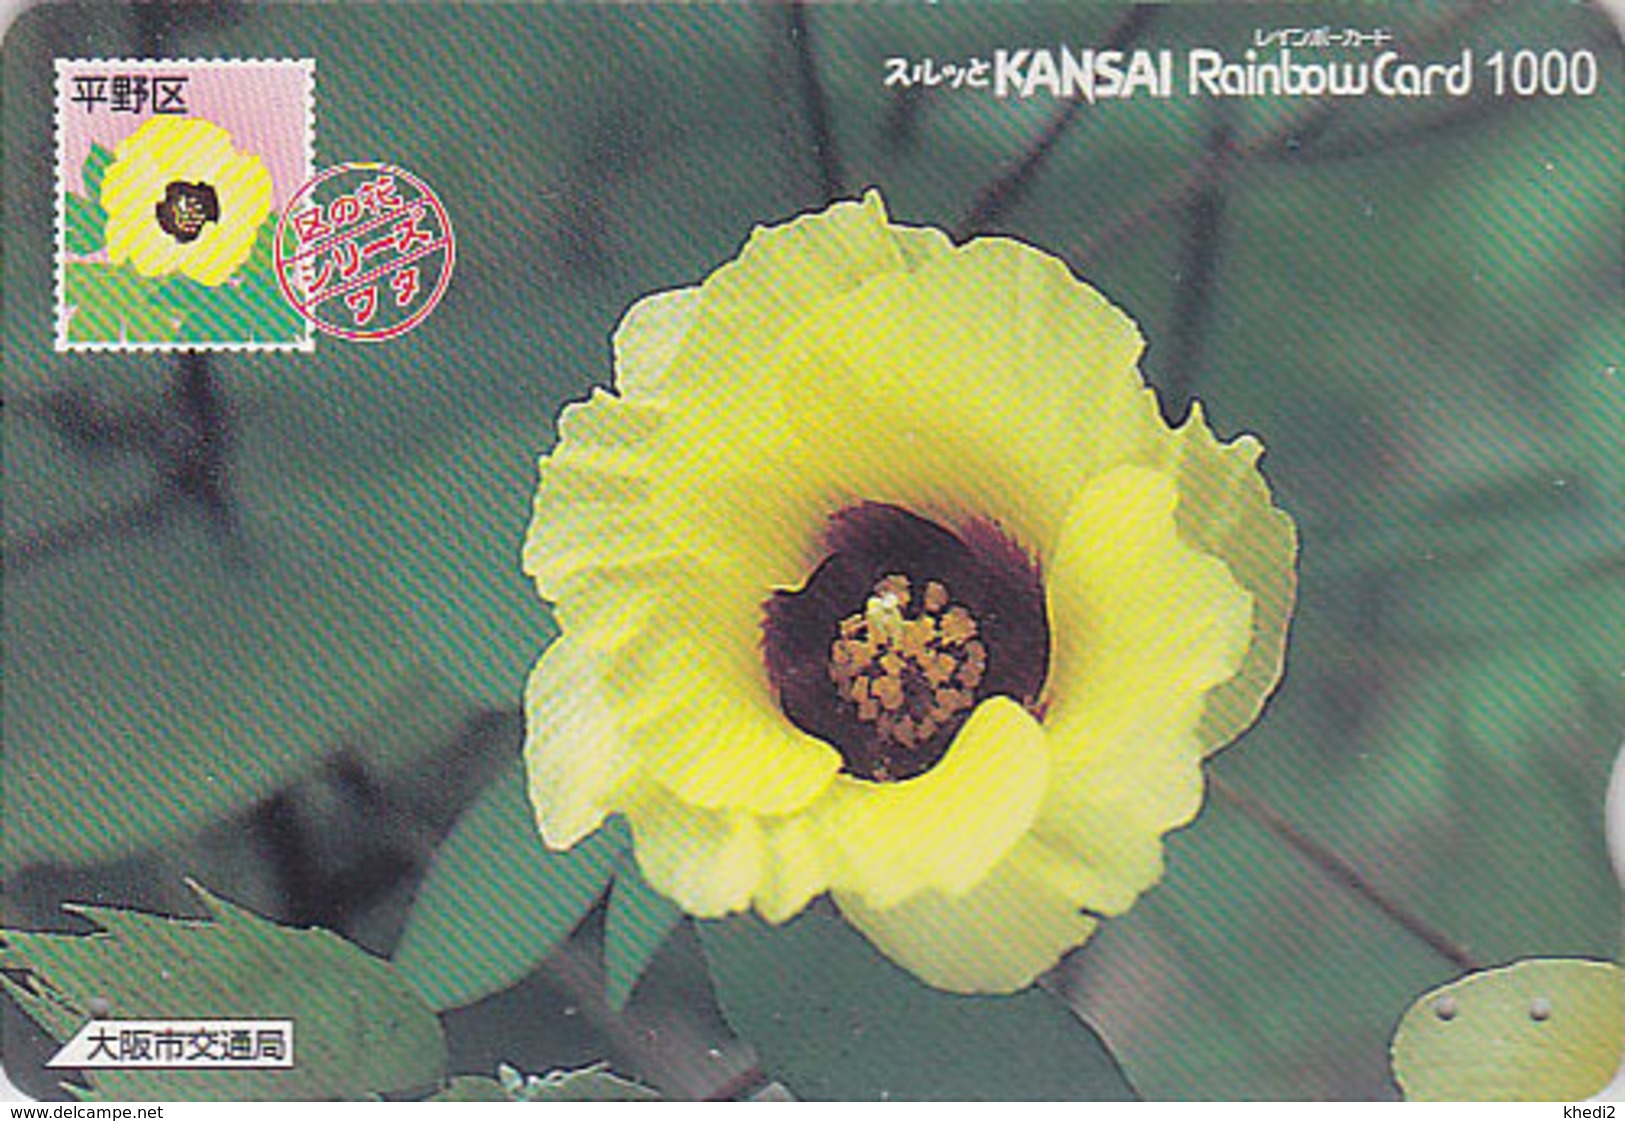 Carte Prépayée Japon - FLEUR - GOSSYPIUM Sur TIMBRE Série 04/16 - FLOWER On STAMP Japan Rainbow Card - 2458 - Sellos & Monedas